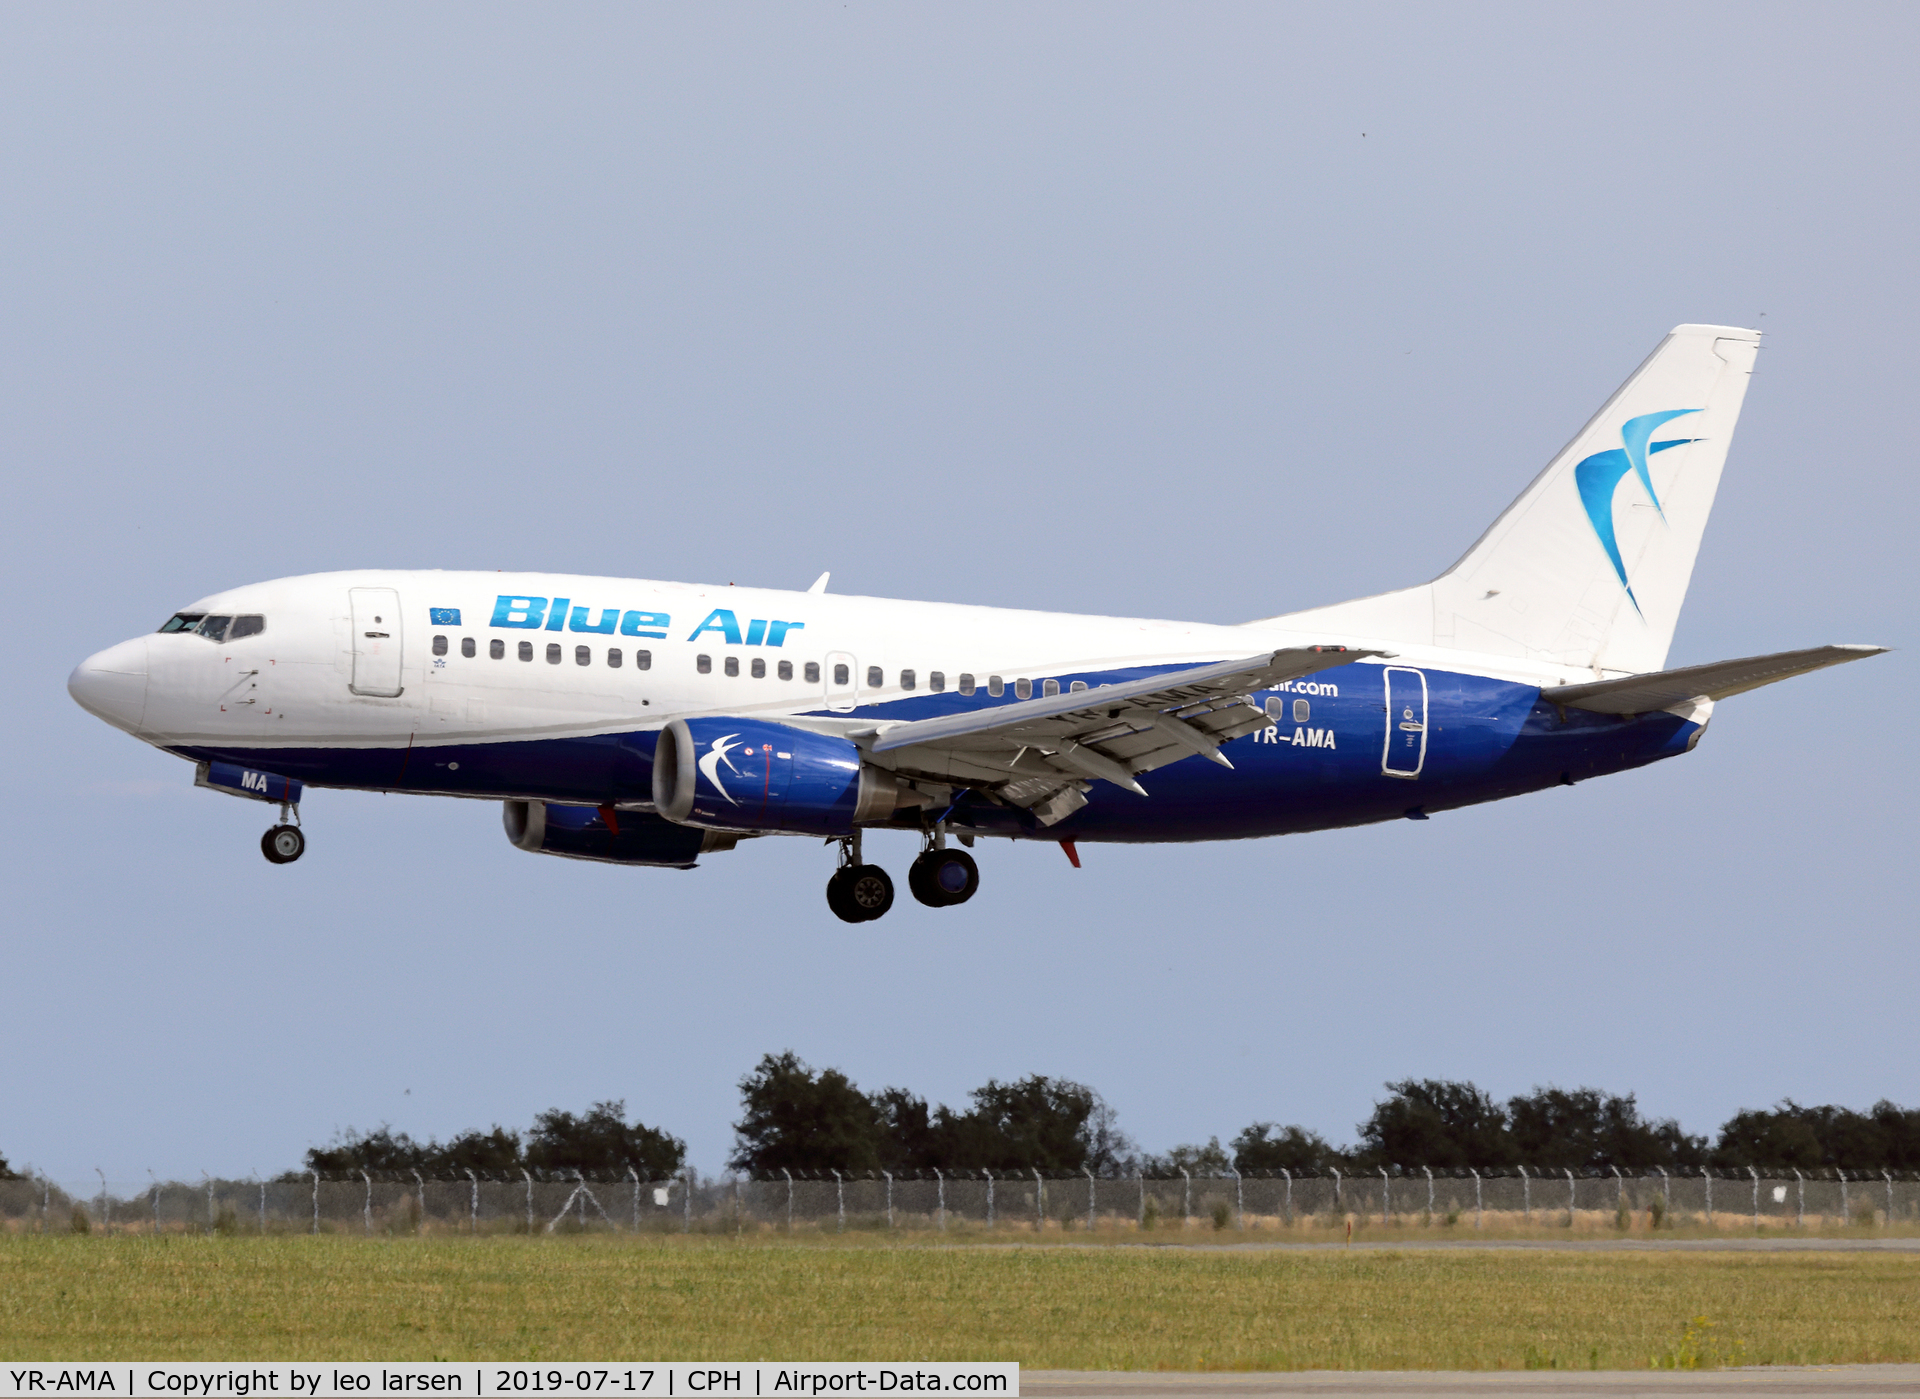 YR-AMA, 1991 Boeing 737-530 C/N 24941, Copenhagen 17.7.2019 L/D R-04L